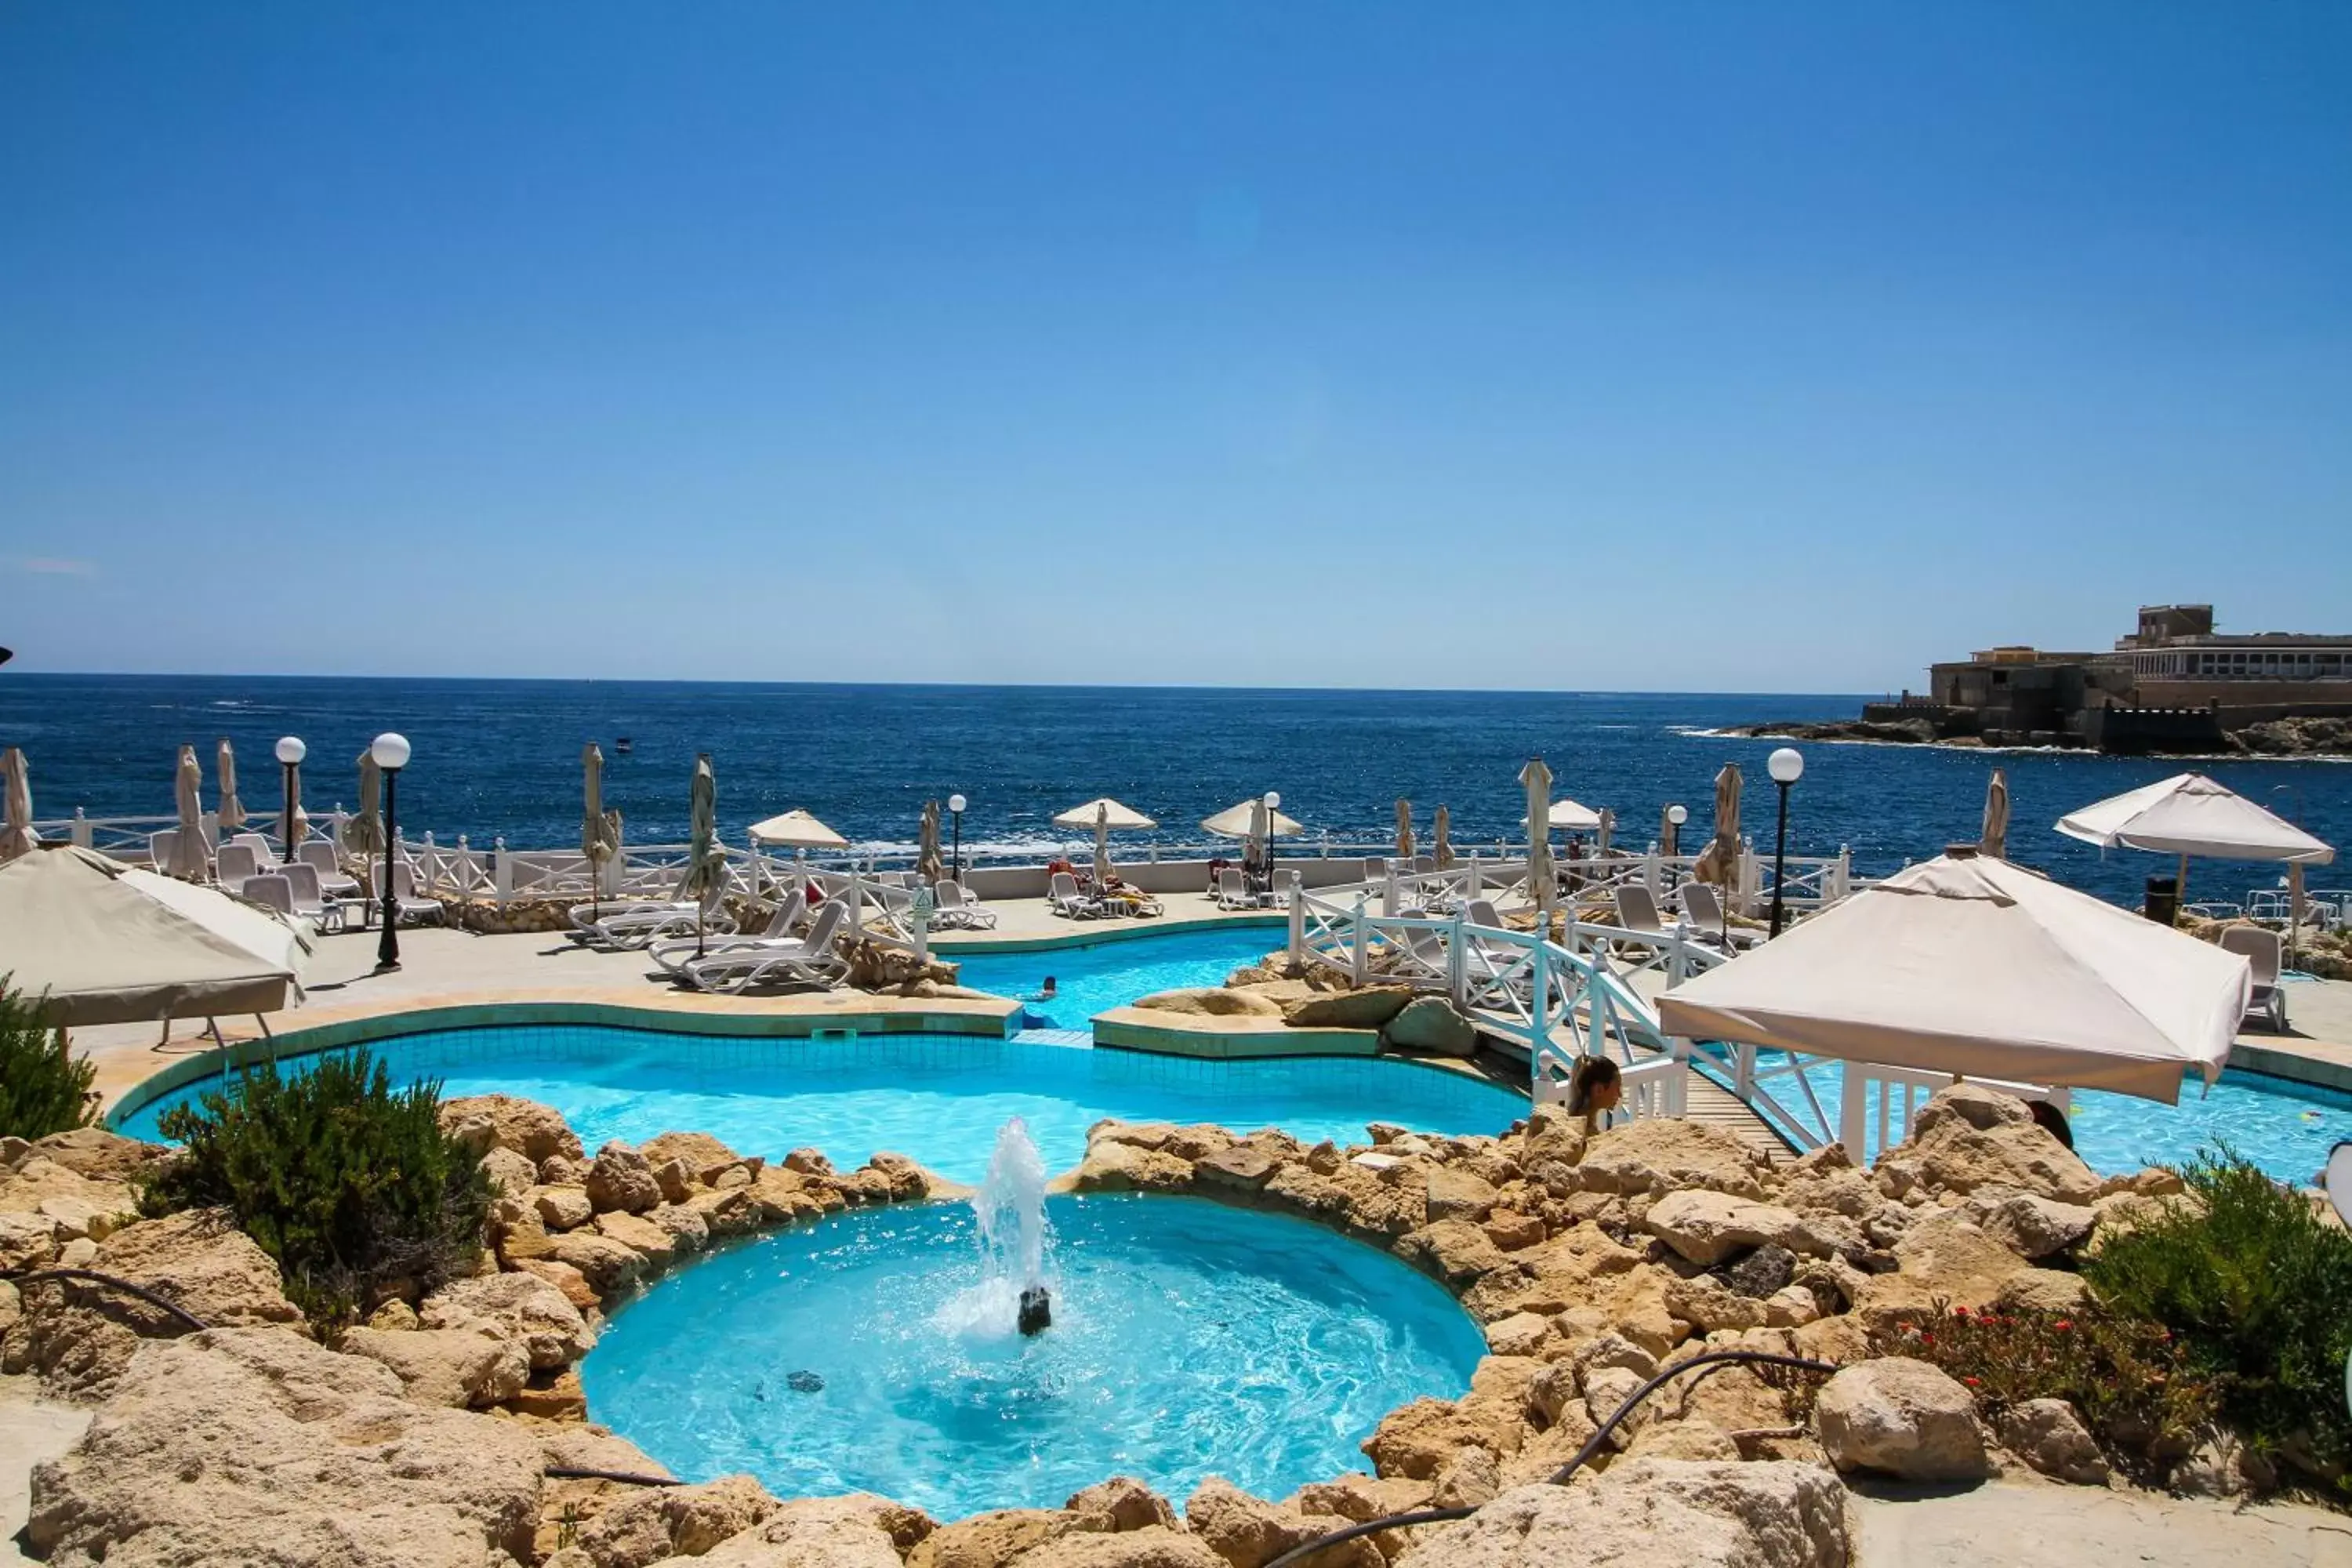 Swimming Pool in Radisson Blu Resort, Malta St. Julian's